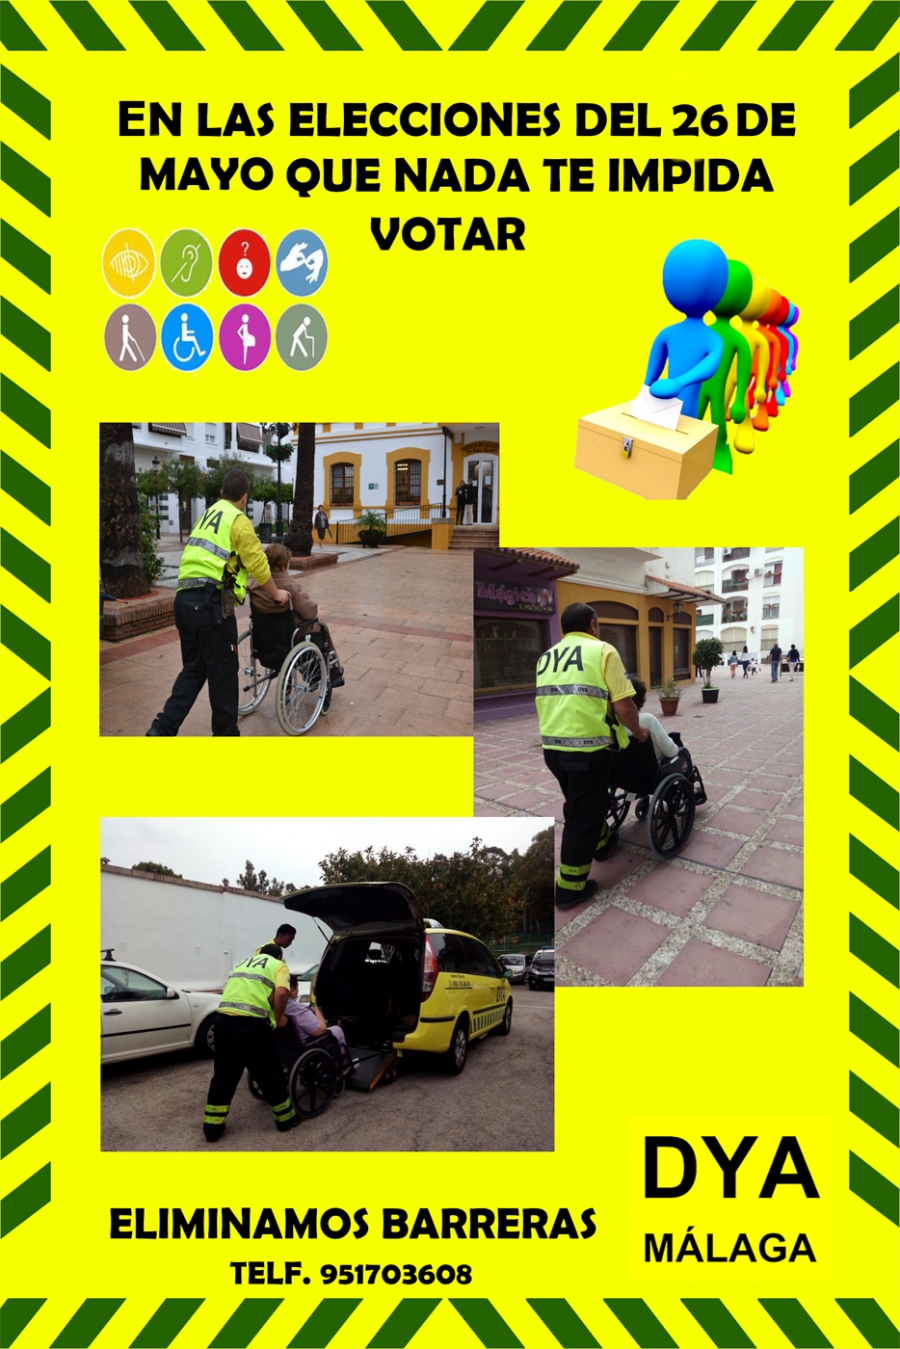 DYA pone de nuevo en marcha un servicio para facilitar el voto en las próximas elecciones municipales a las personas con problemas de movilidad